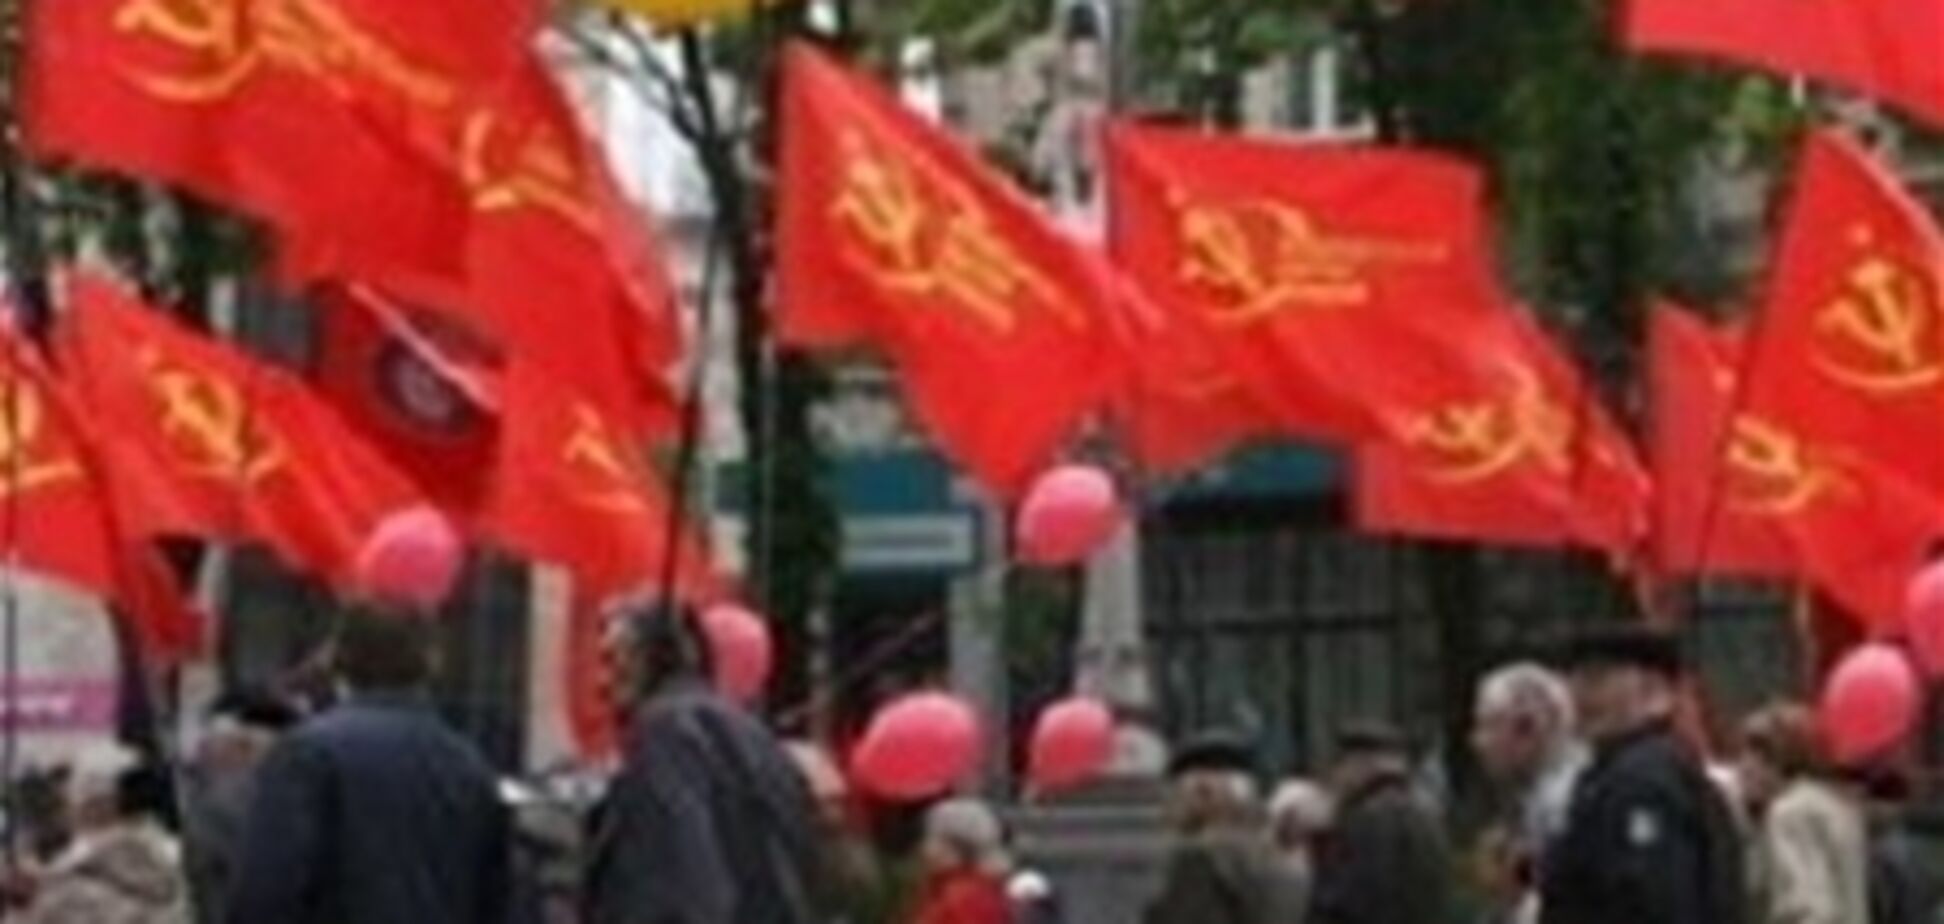 Суд отменил запрет оккупационной символики во Львове